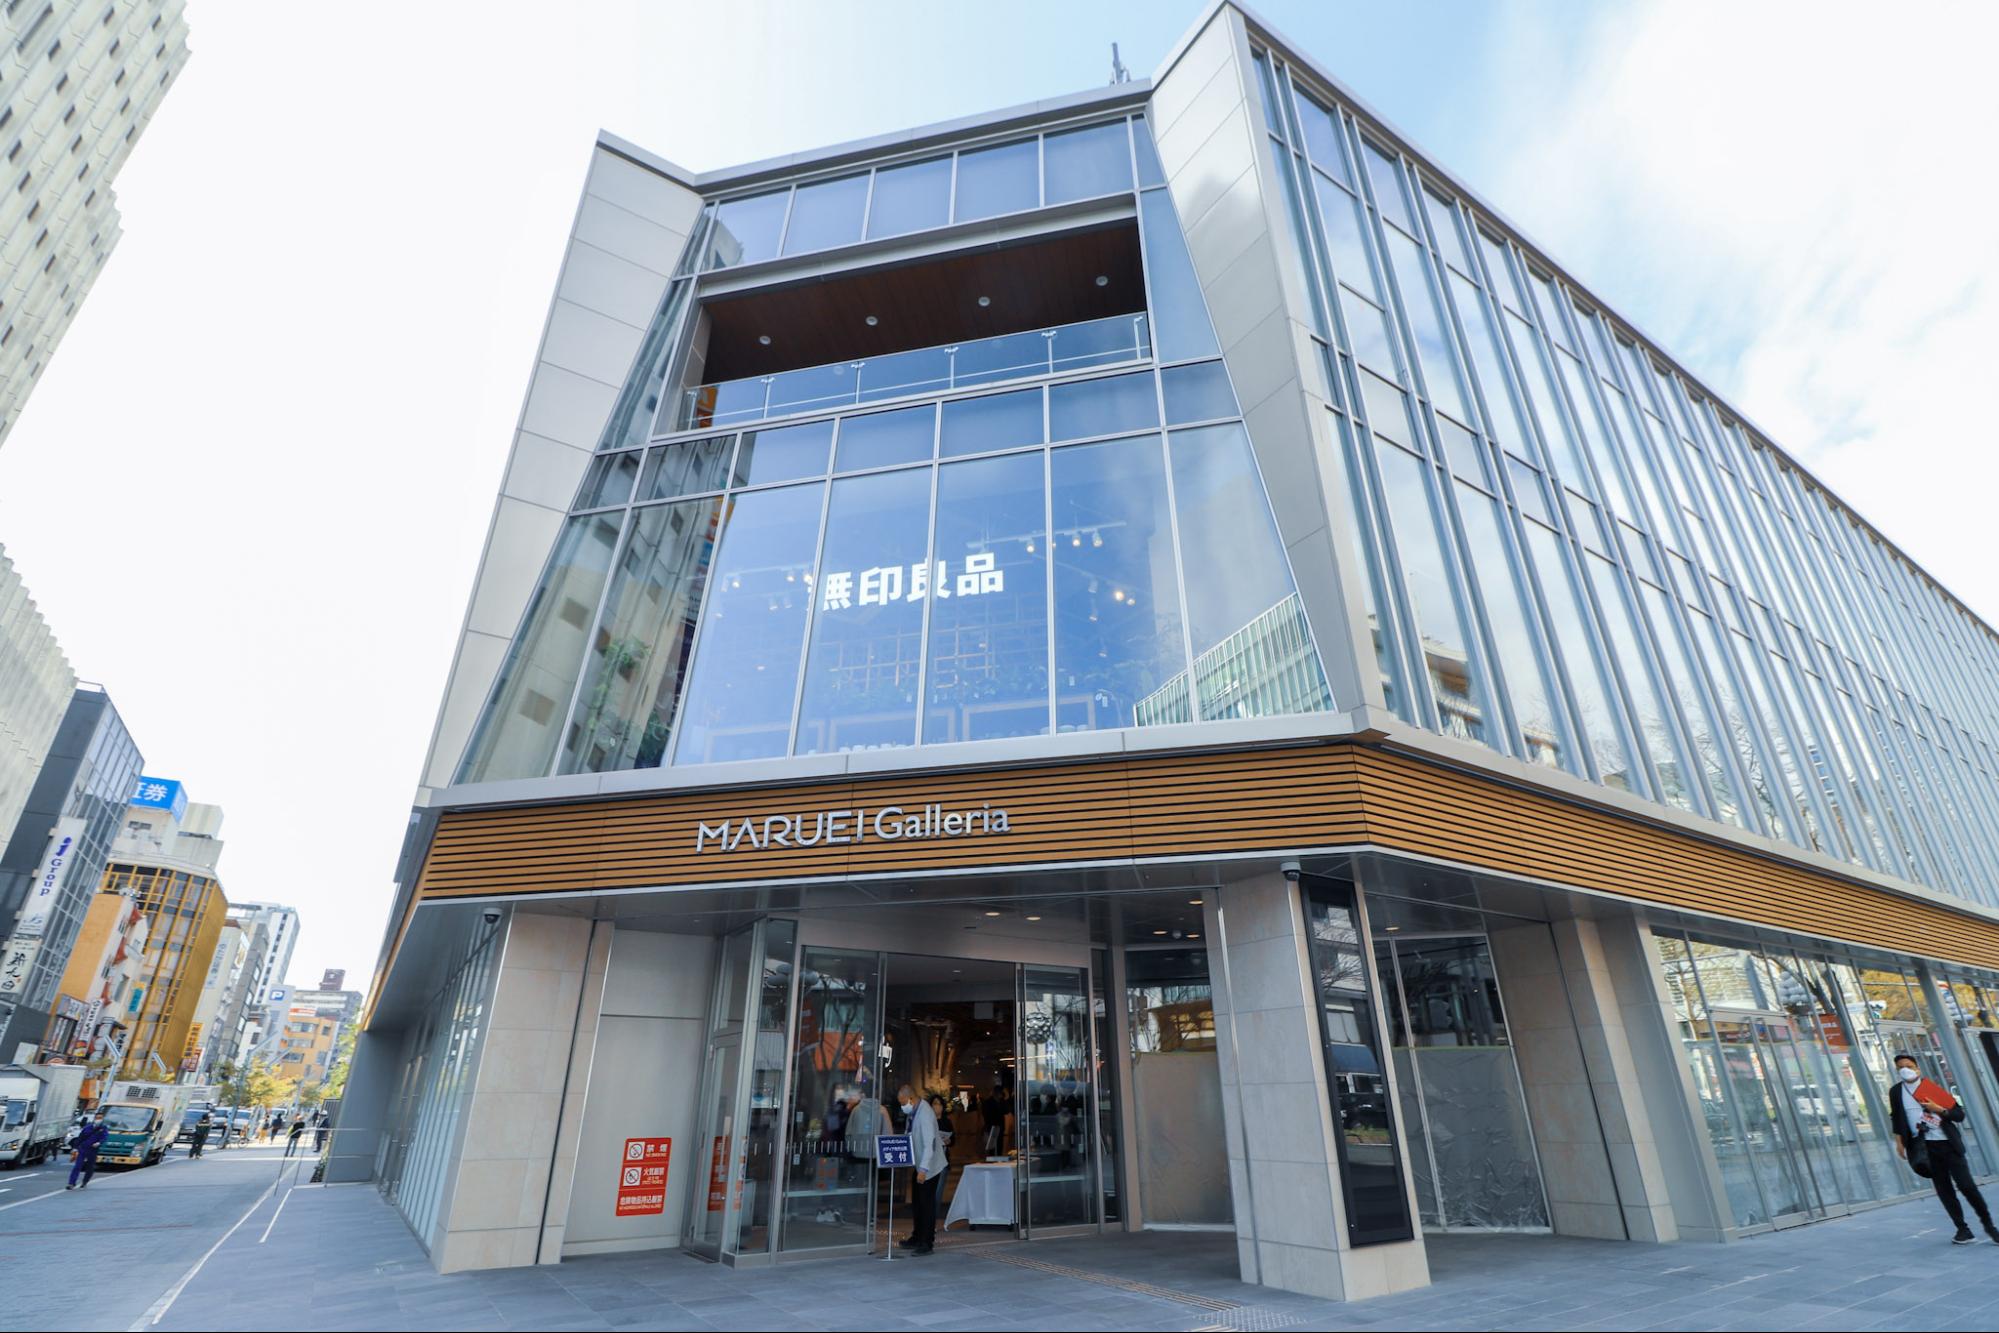 丸荣旧址上的新商业设施“Maruei Galleria”新开业!